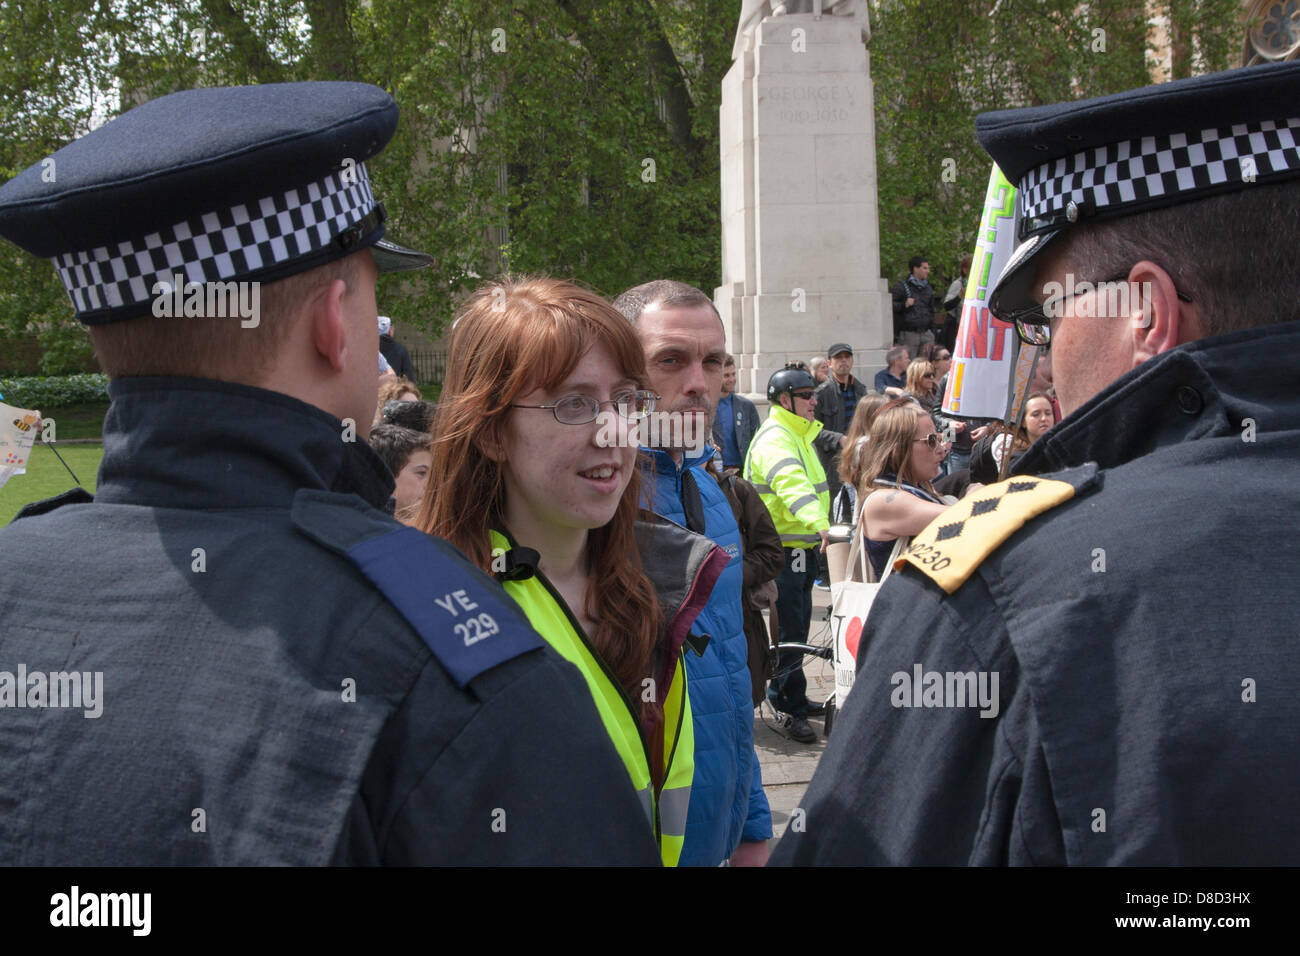 2013-05-25 Westminster, London. Eine Protest-Veranstalter spricht mit der Polizei, nachdem mehrere hundert Anti-Monsanto Demonstranten am Old Palace Yard außerhalb der Houses of Parliament in London angekommen. Stockfoto